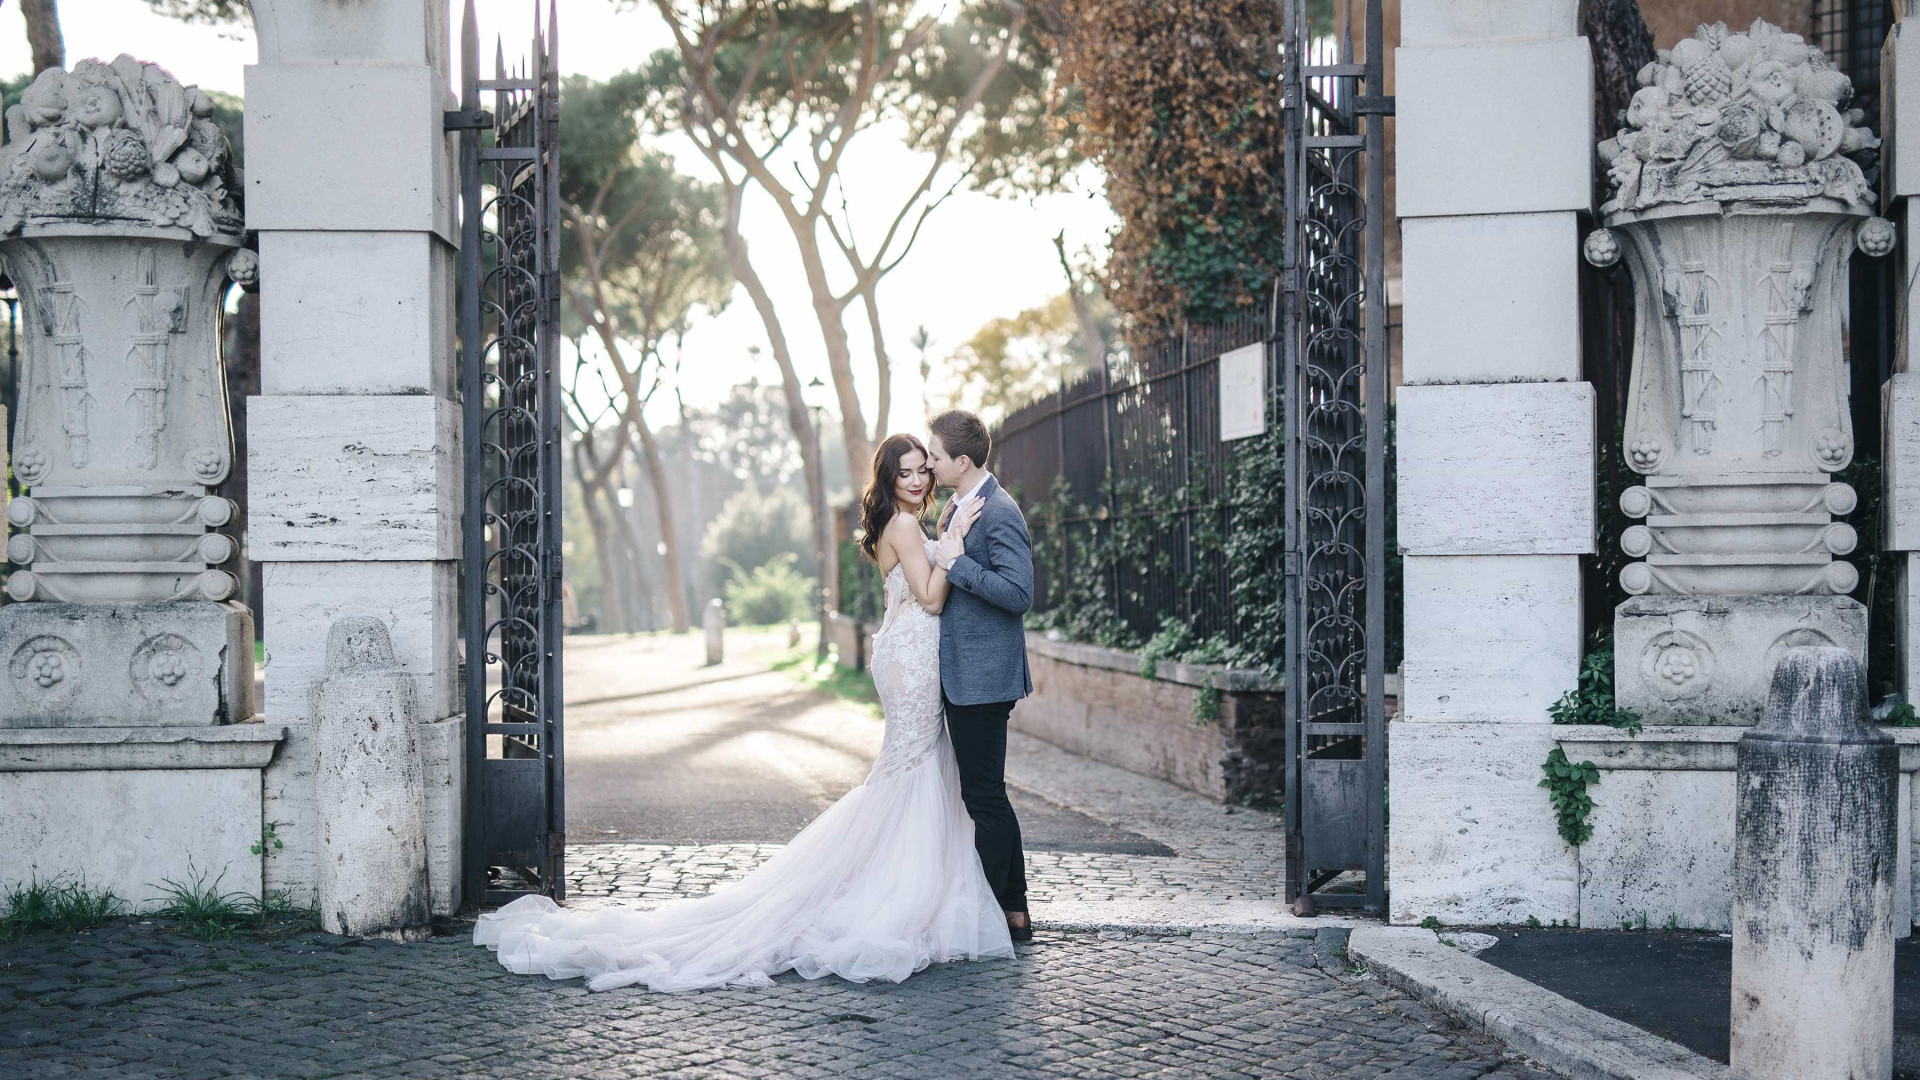 Quanto custa casar na Itália? Veja como planejar a festa